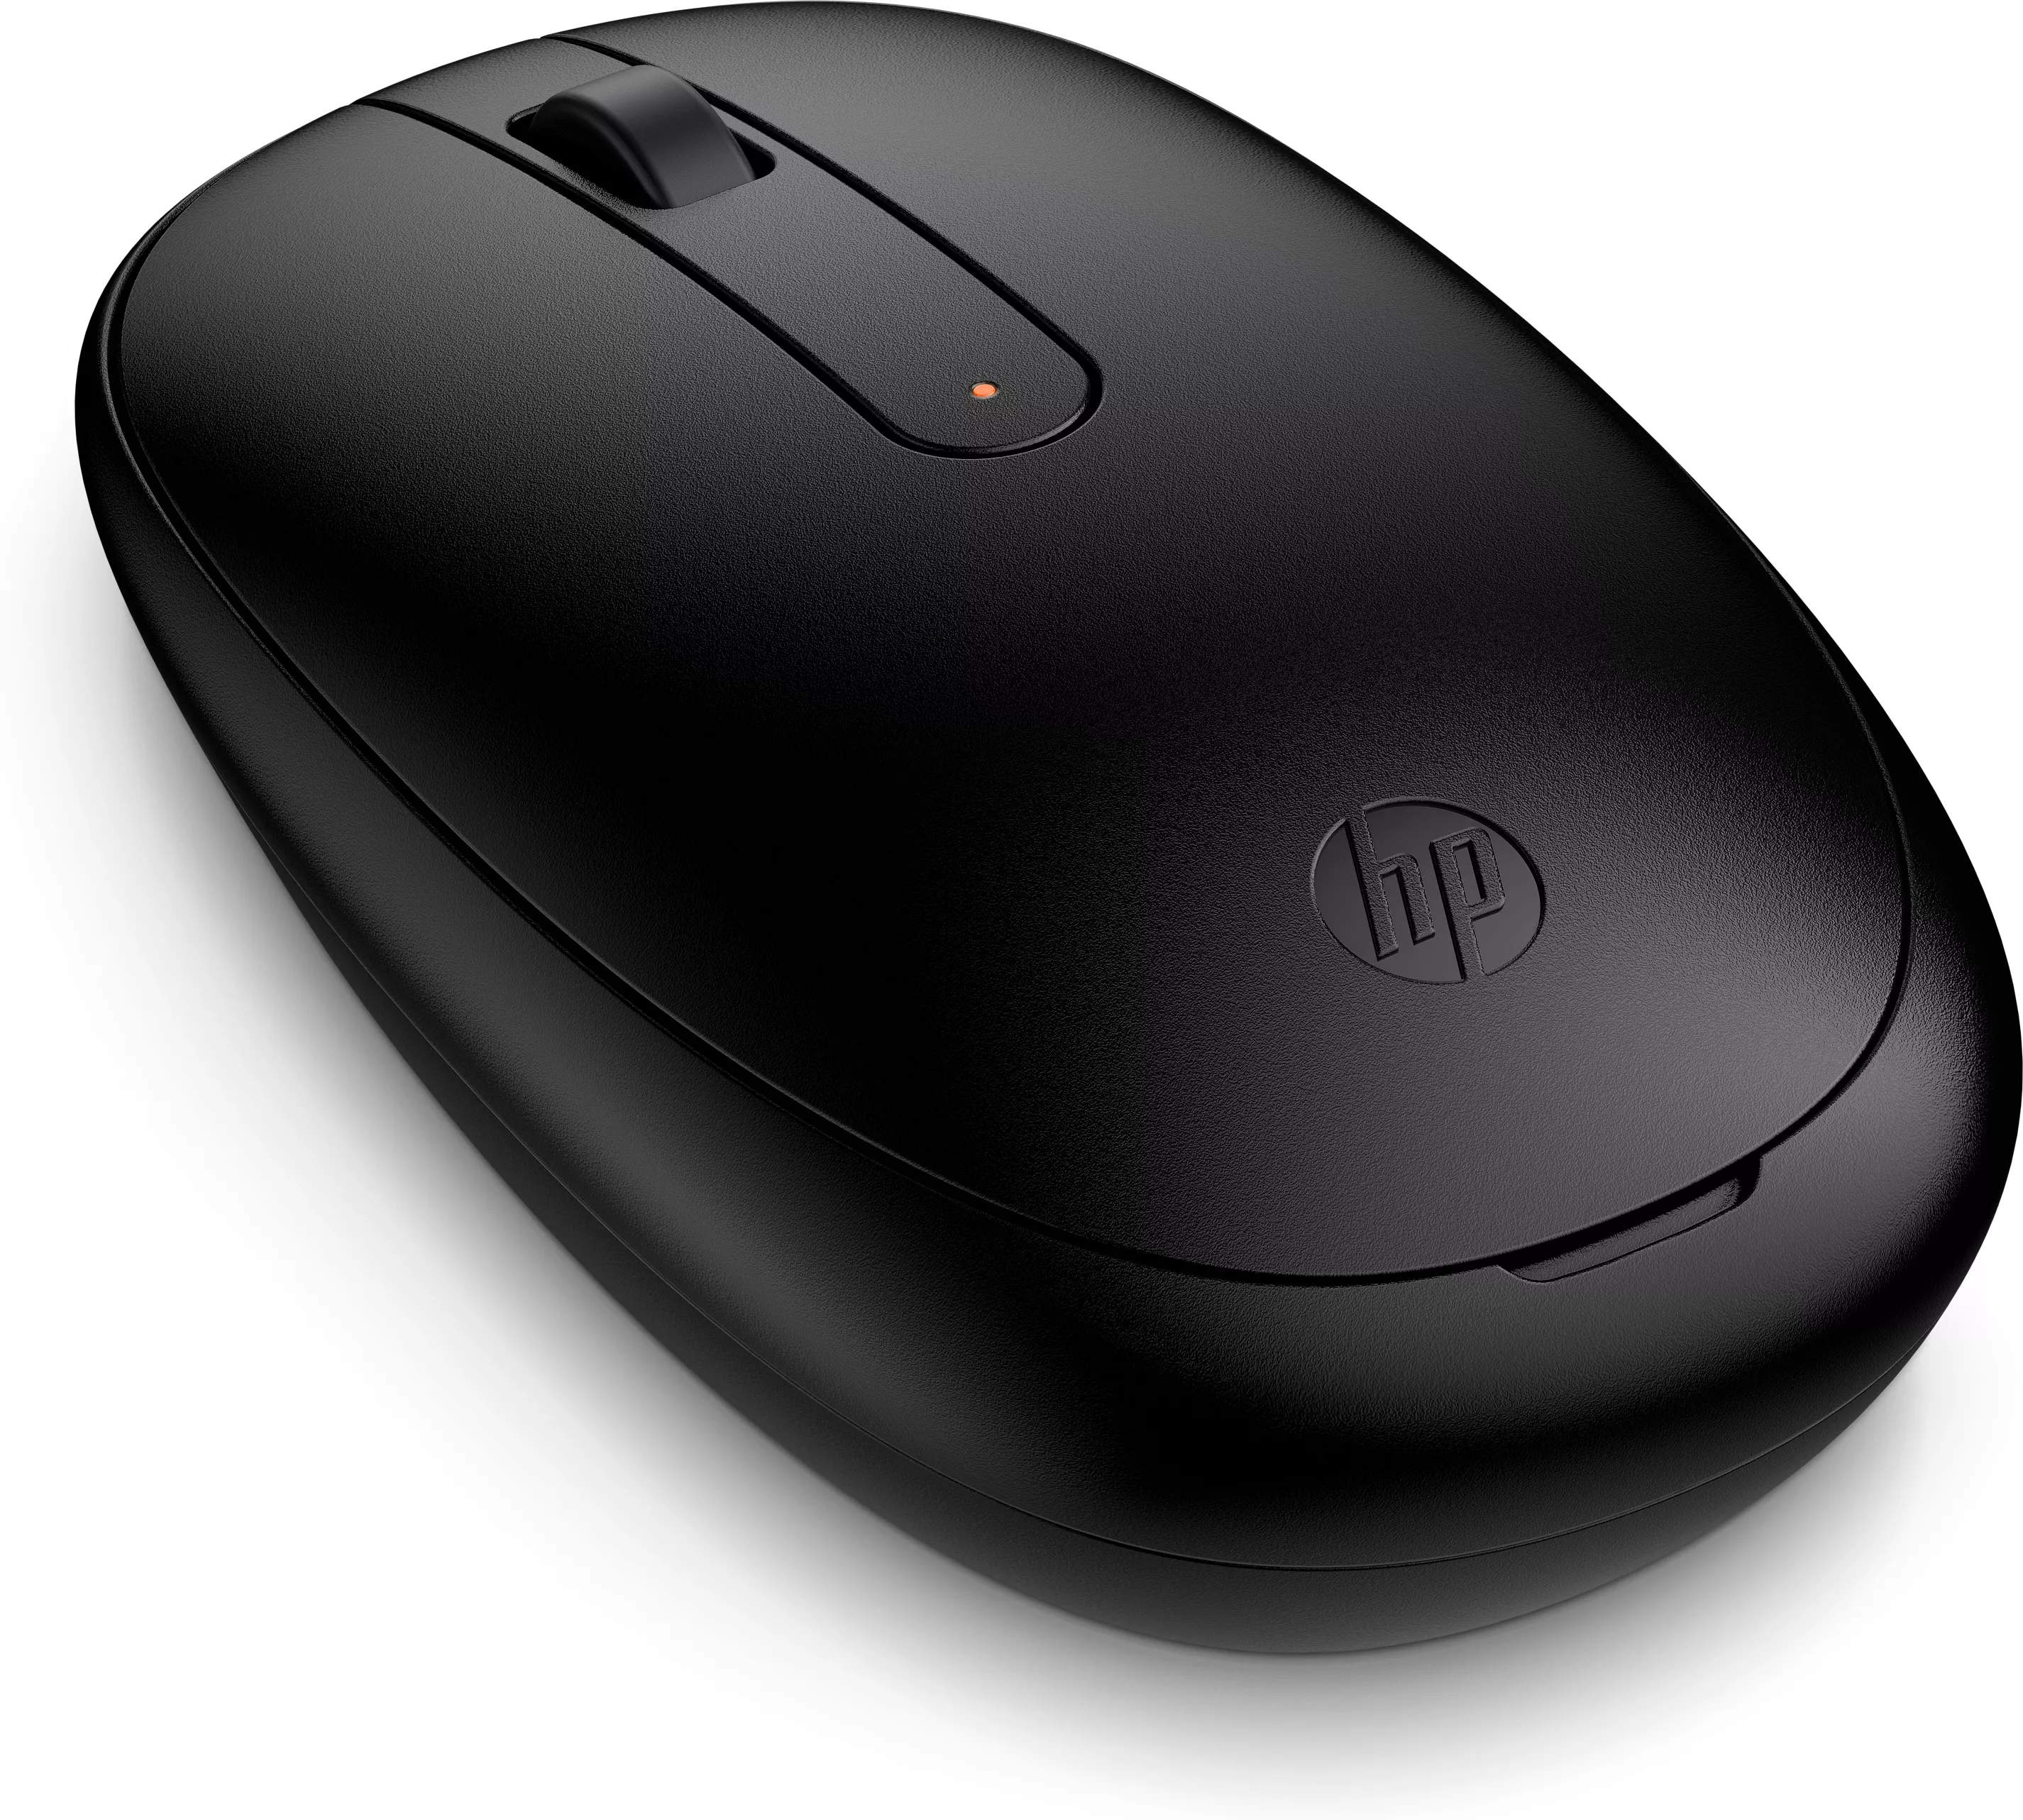 Vente HP 240 Mouse BLK HP au meilleur prix - visuel 2